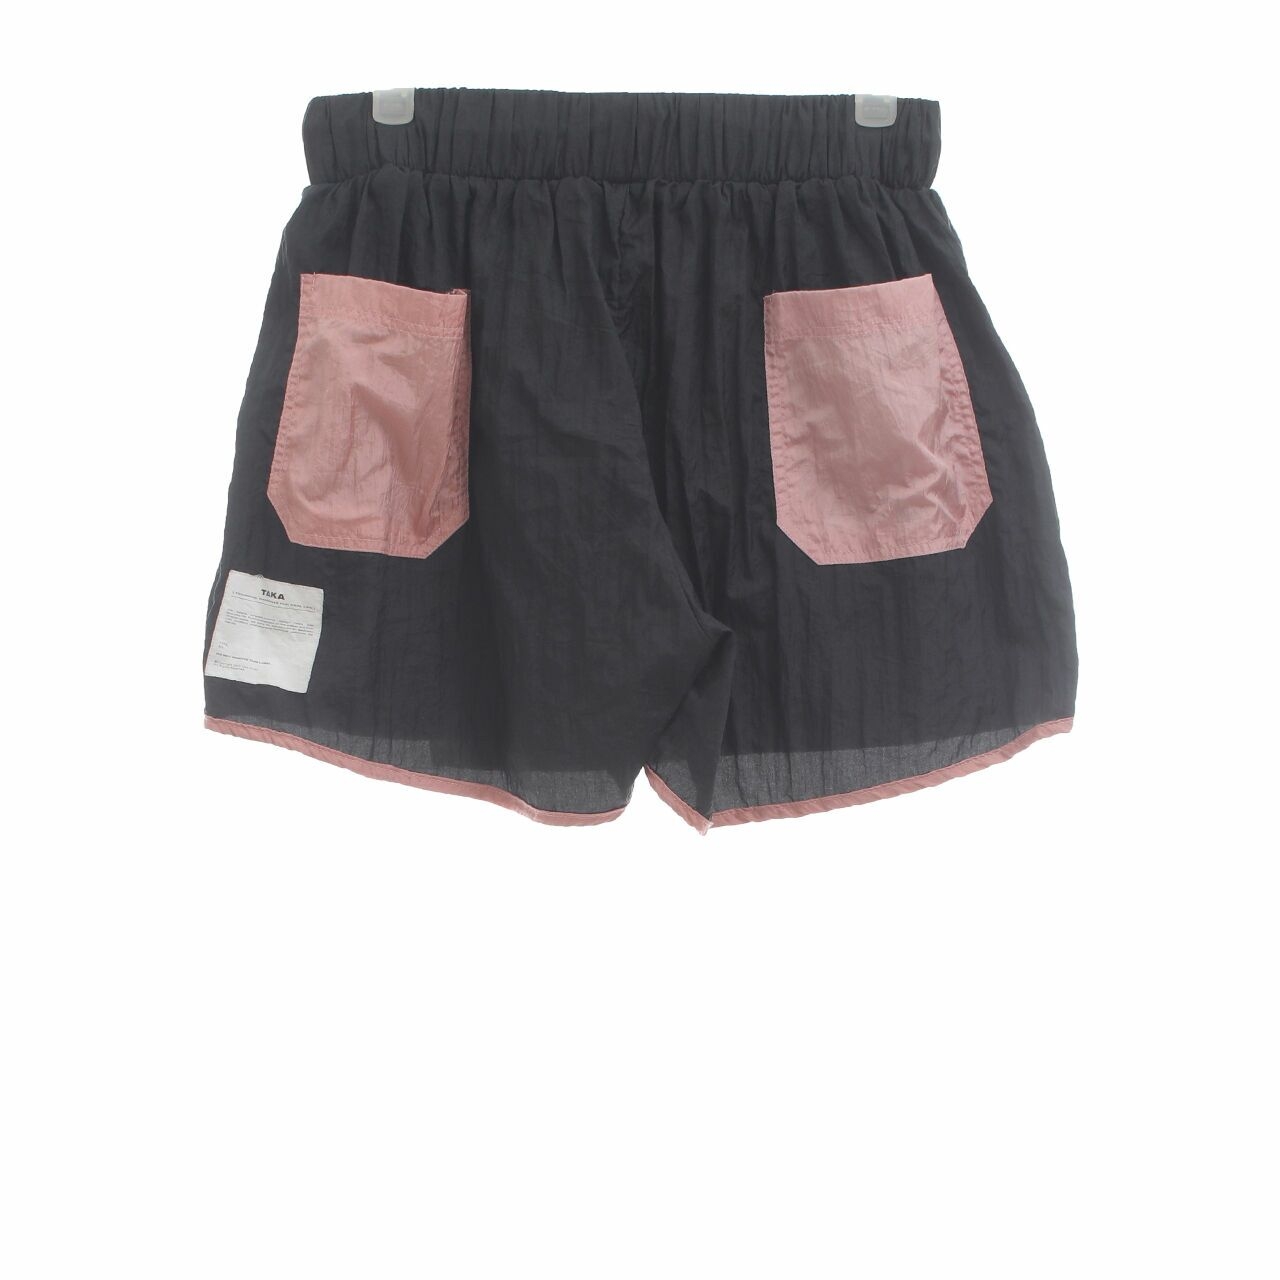 Taka Black & Peach Skort Short Pants	